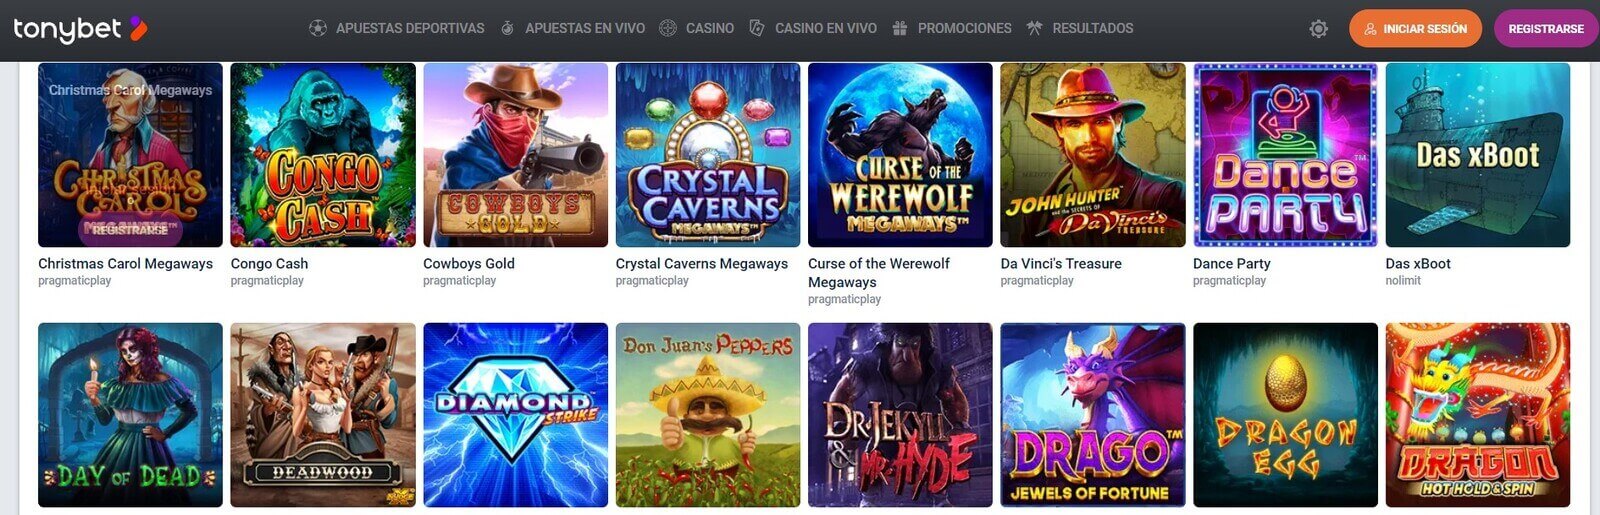 TonyBet Casino nuevo en línea de España